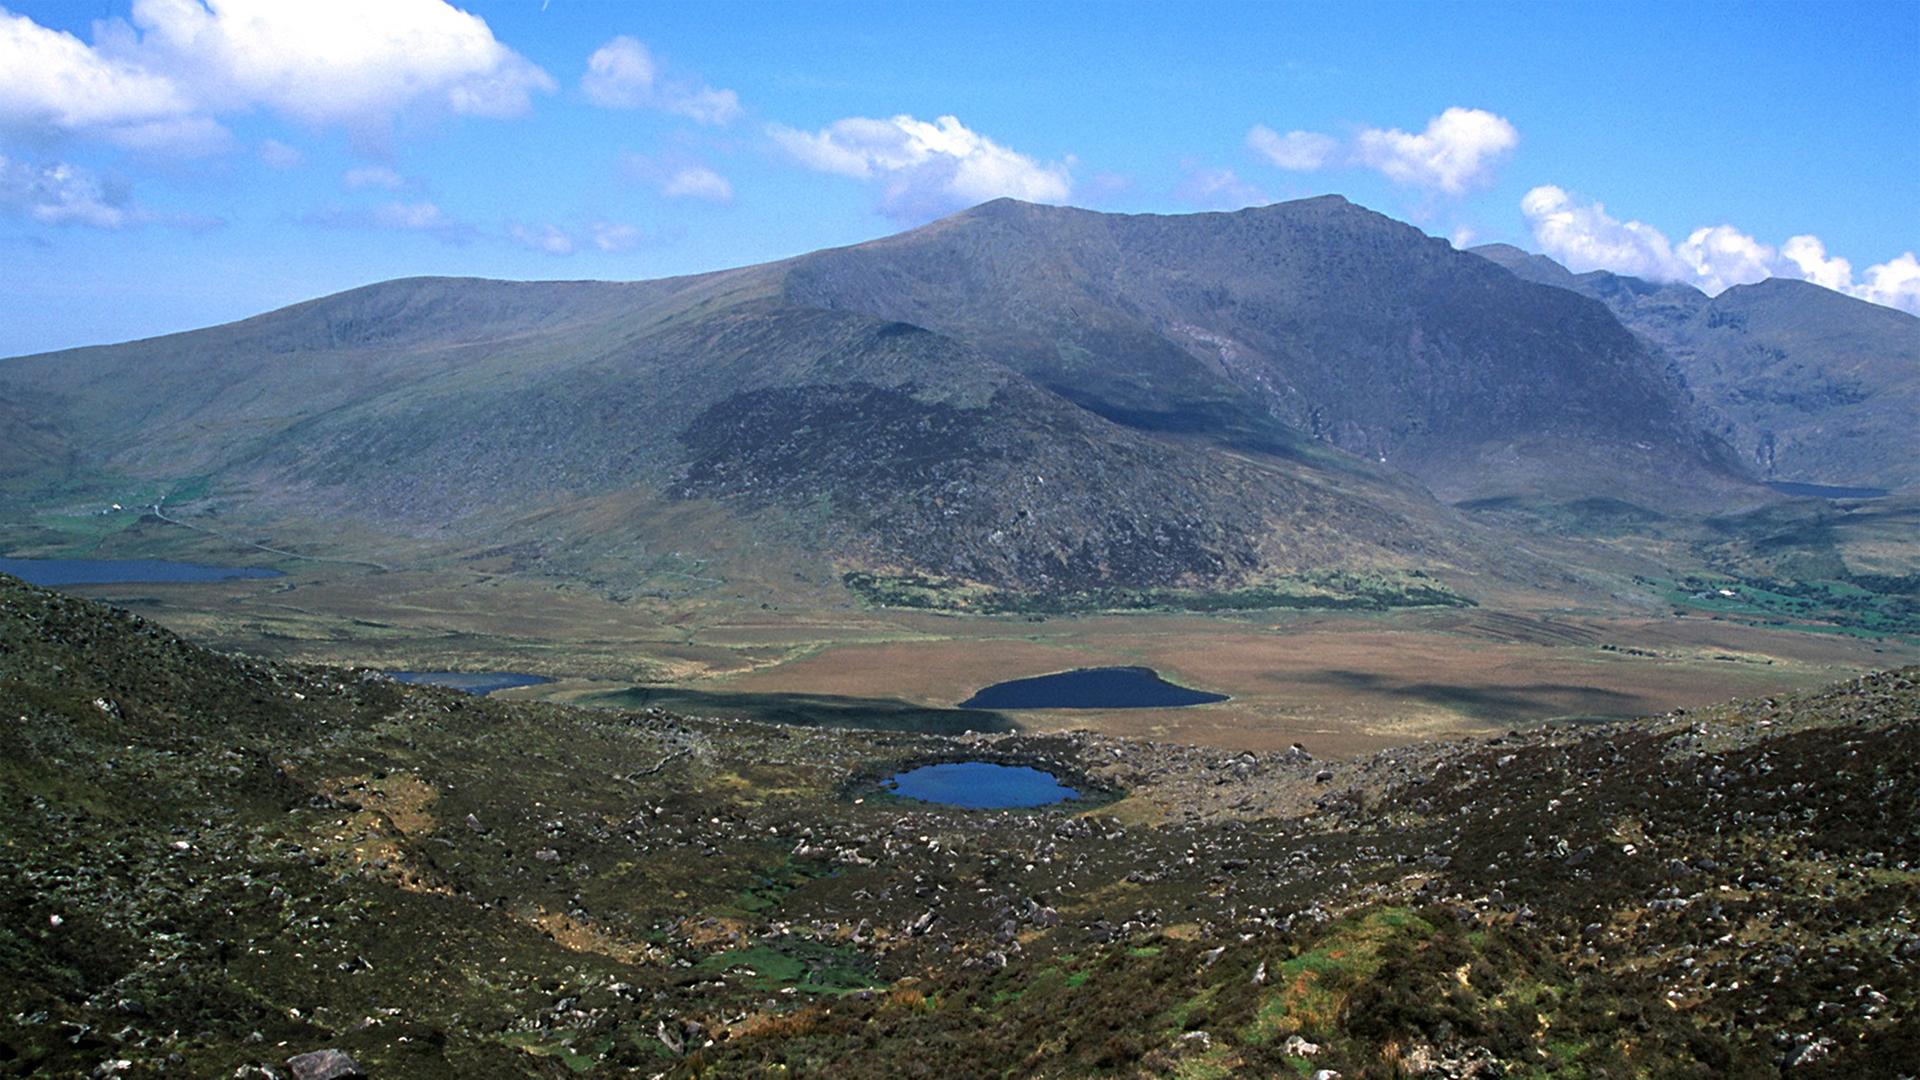 Blick auf die Zufahrt zum Connor Pass auf der Halbinsel Dingle in der Provinz Kerry im Süden Irlands. Im Hintergrund erhebt sich der Brandon Mountain.